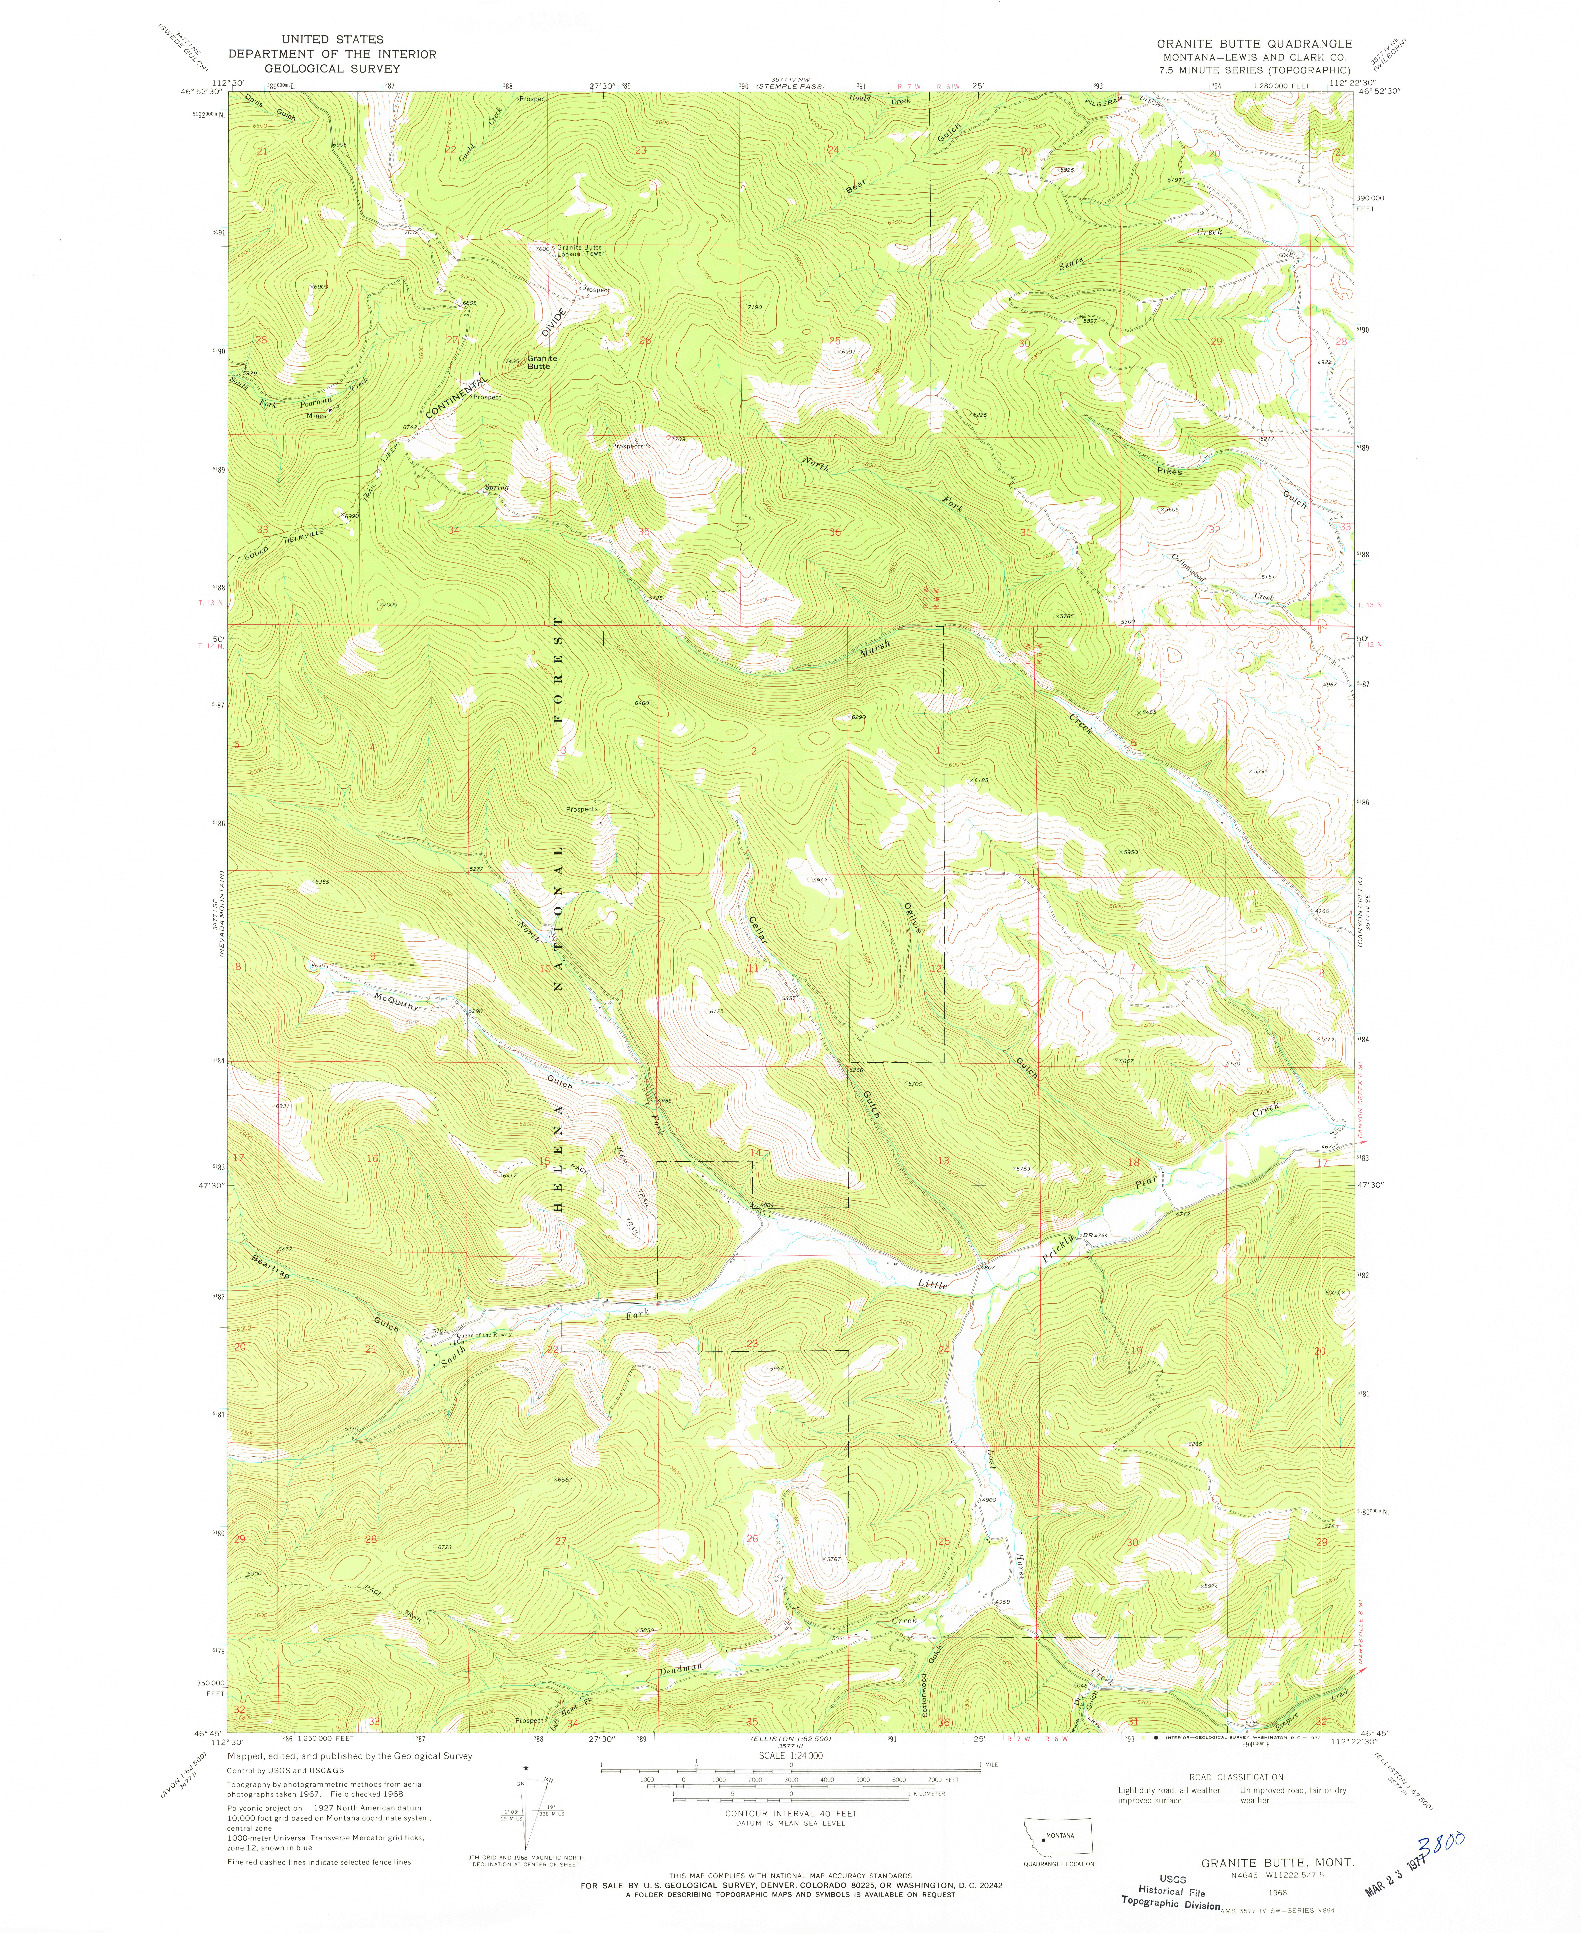 USGS 1:24000-SCALE QUADRANGLE FOR GRANITE BUTTE, MT 1968